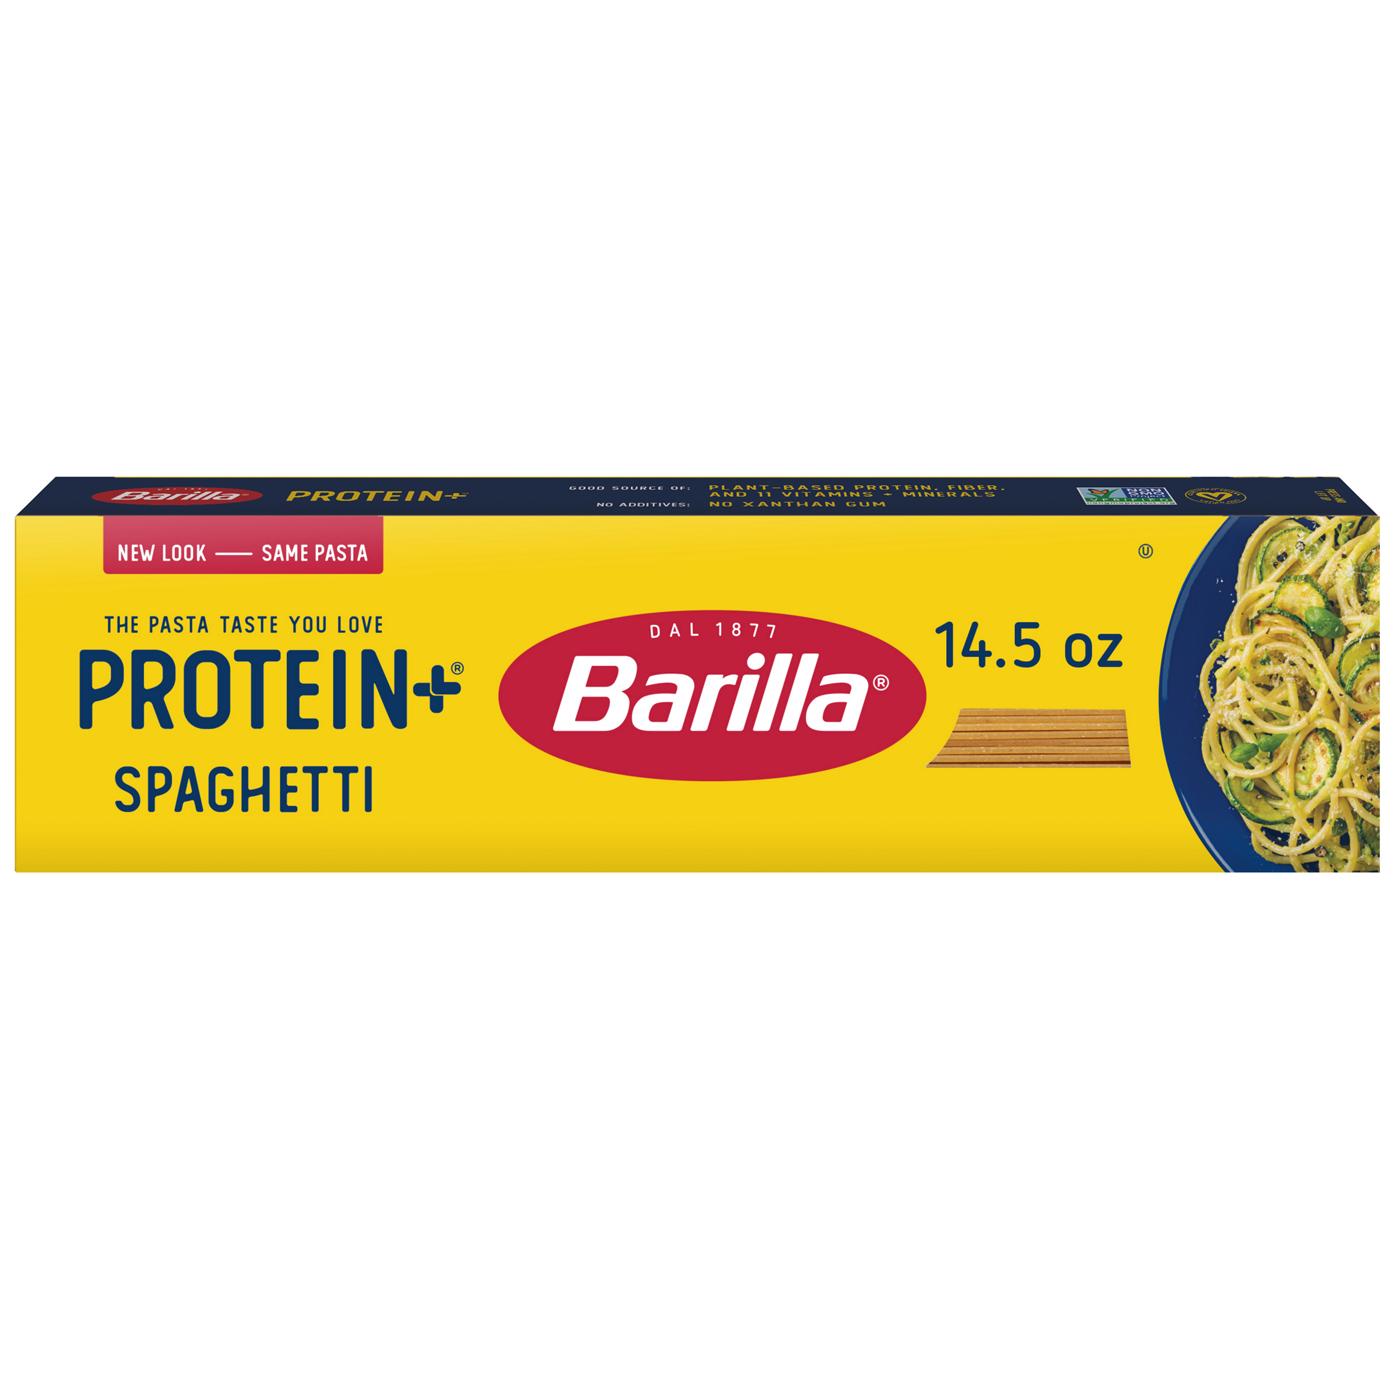 Barilla Protein + Spaghetti Pasta - Shop Pasta at H-E-B